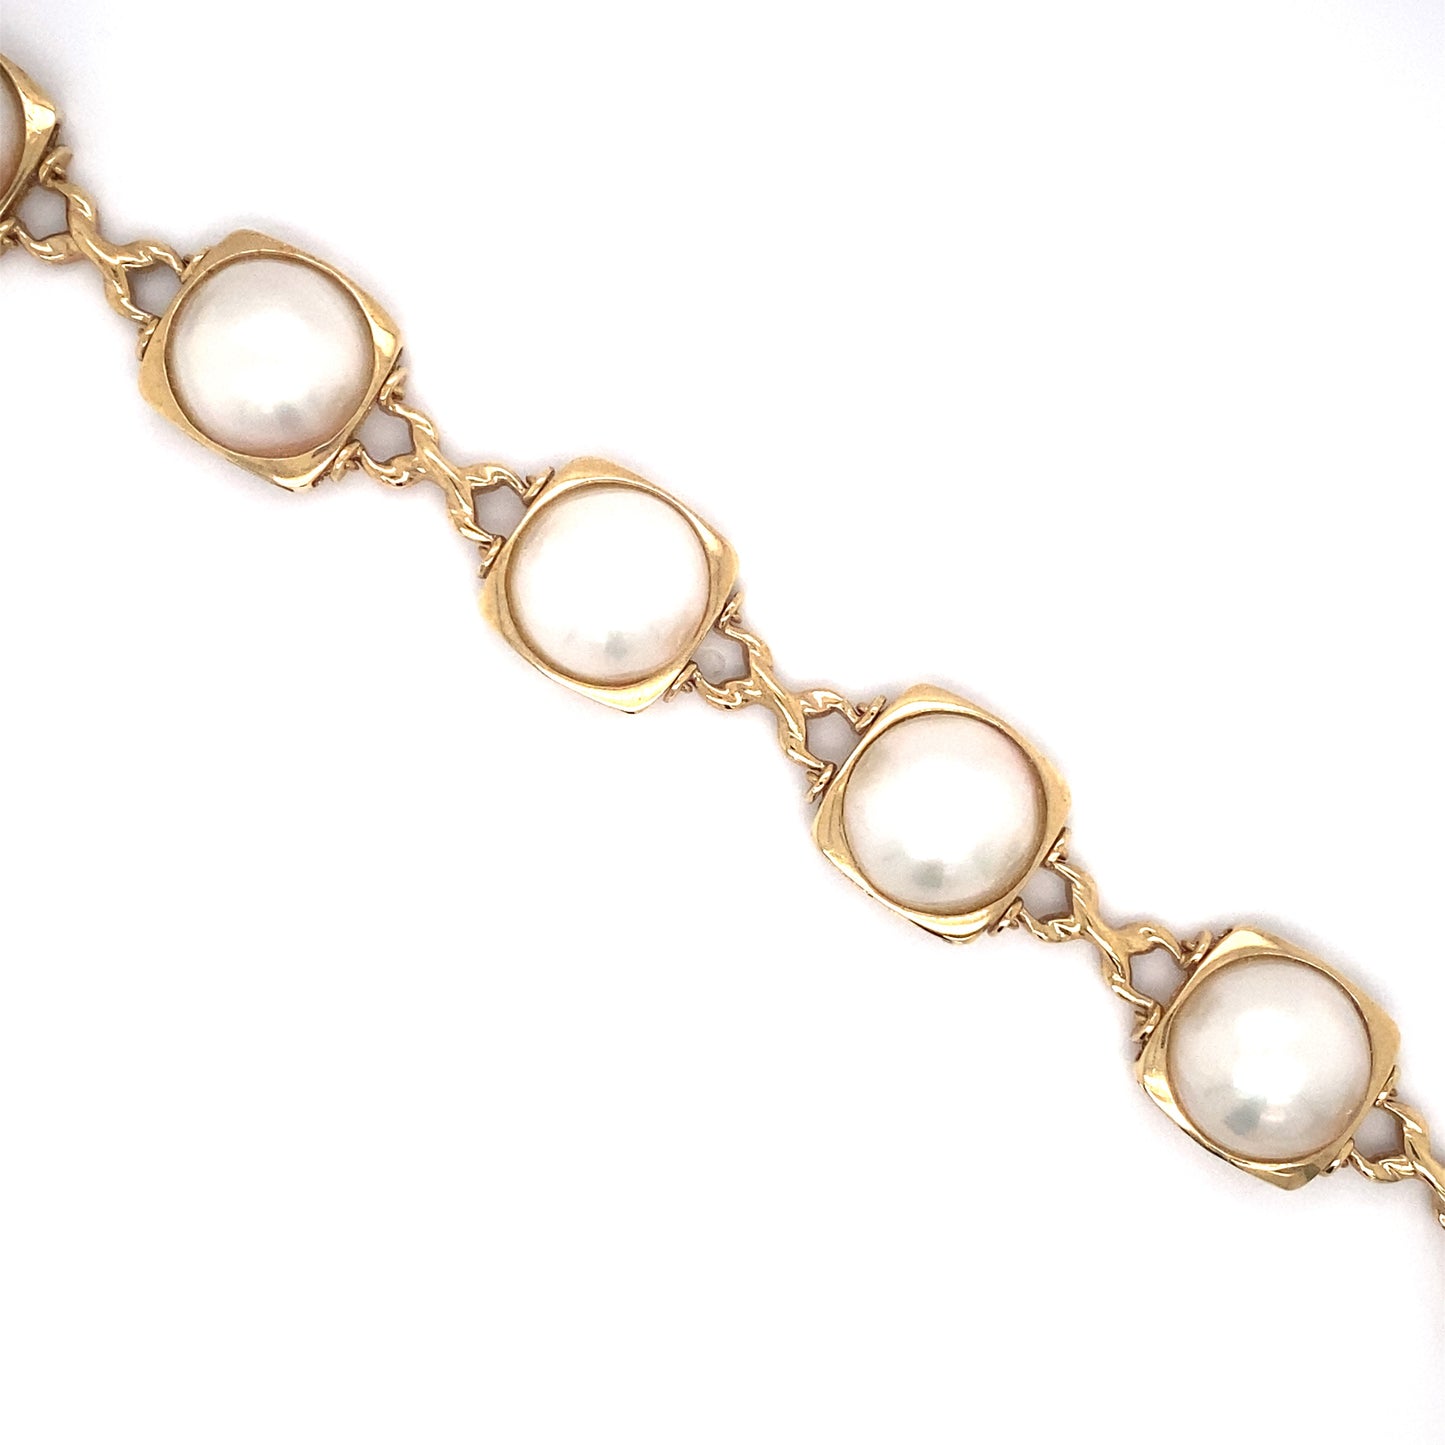 Circa 1980s 12.5mm Mabe Pearl Link Bracelet in 14K Gold